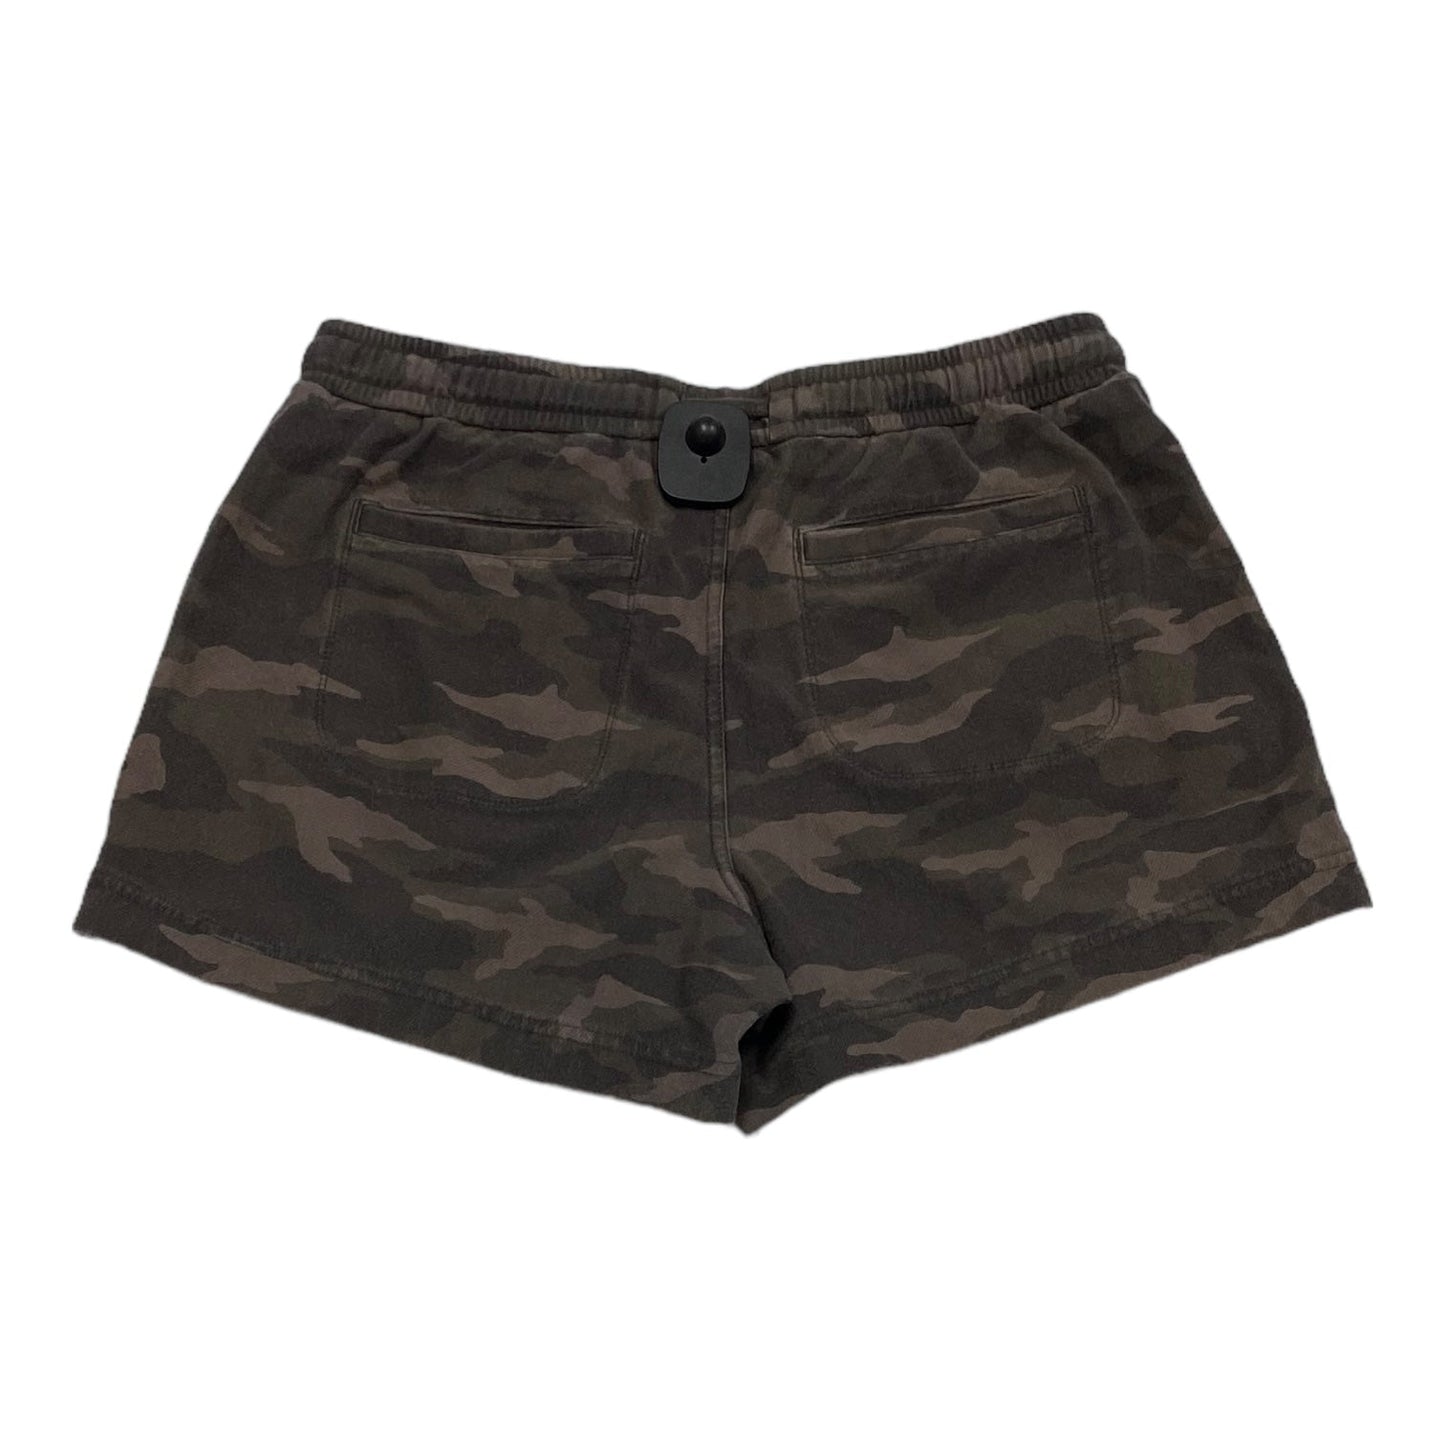 Camouflage Print Shorts Athleta, Size 6